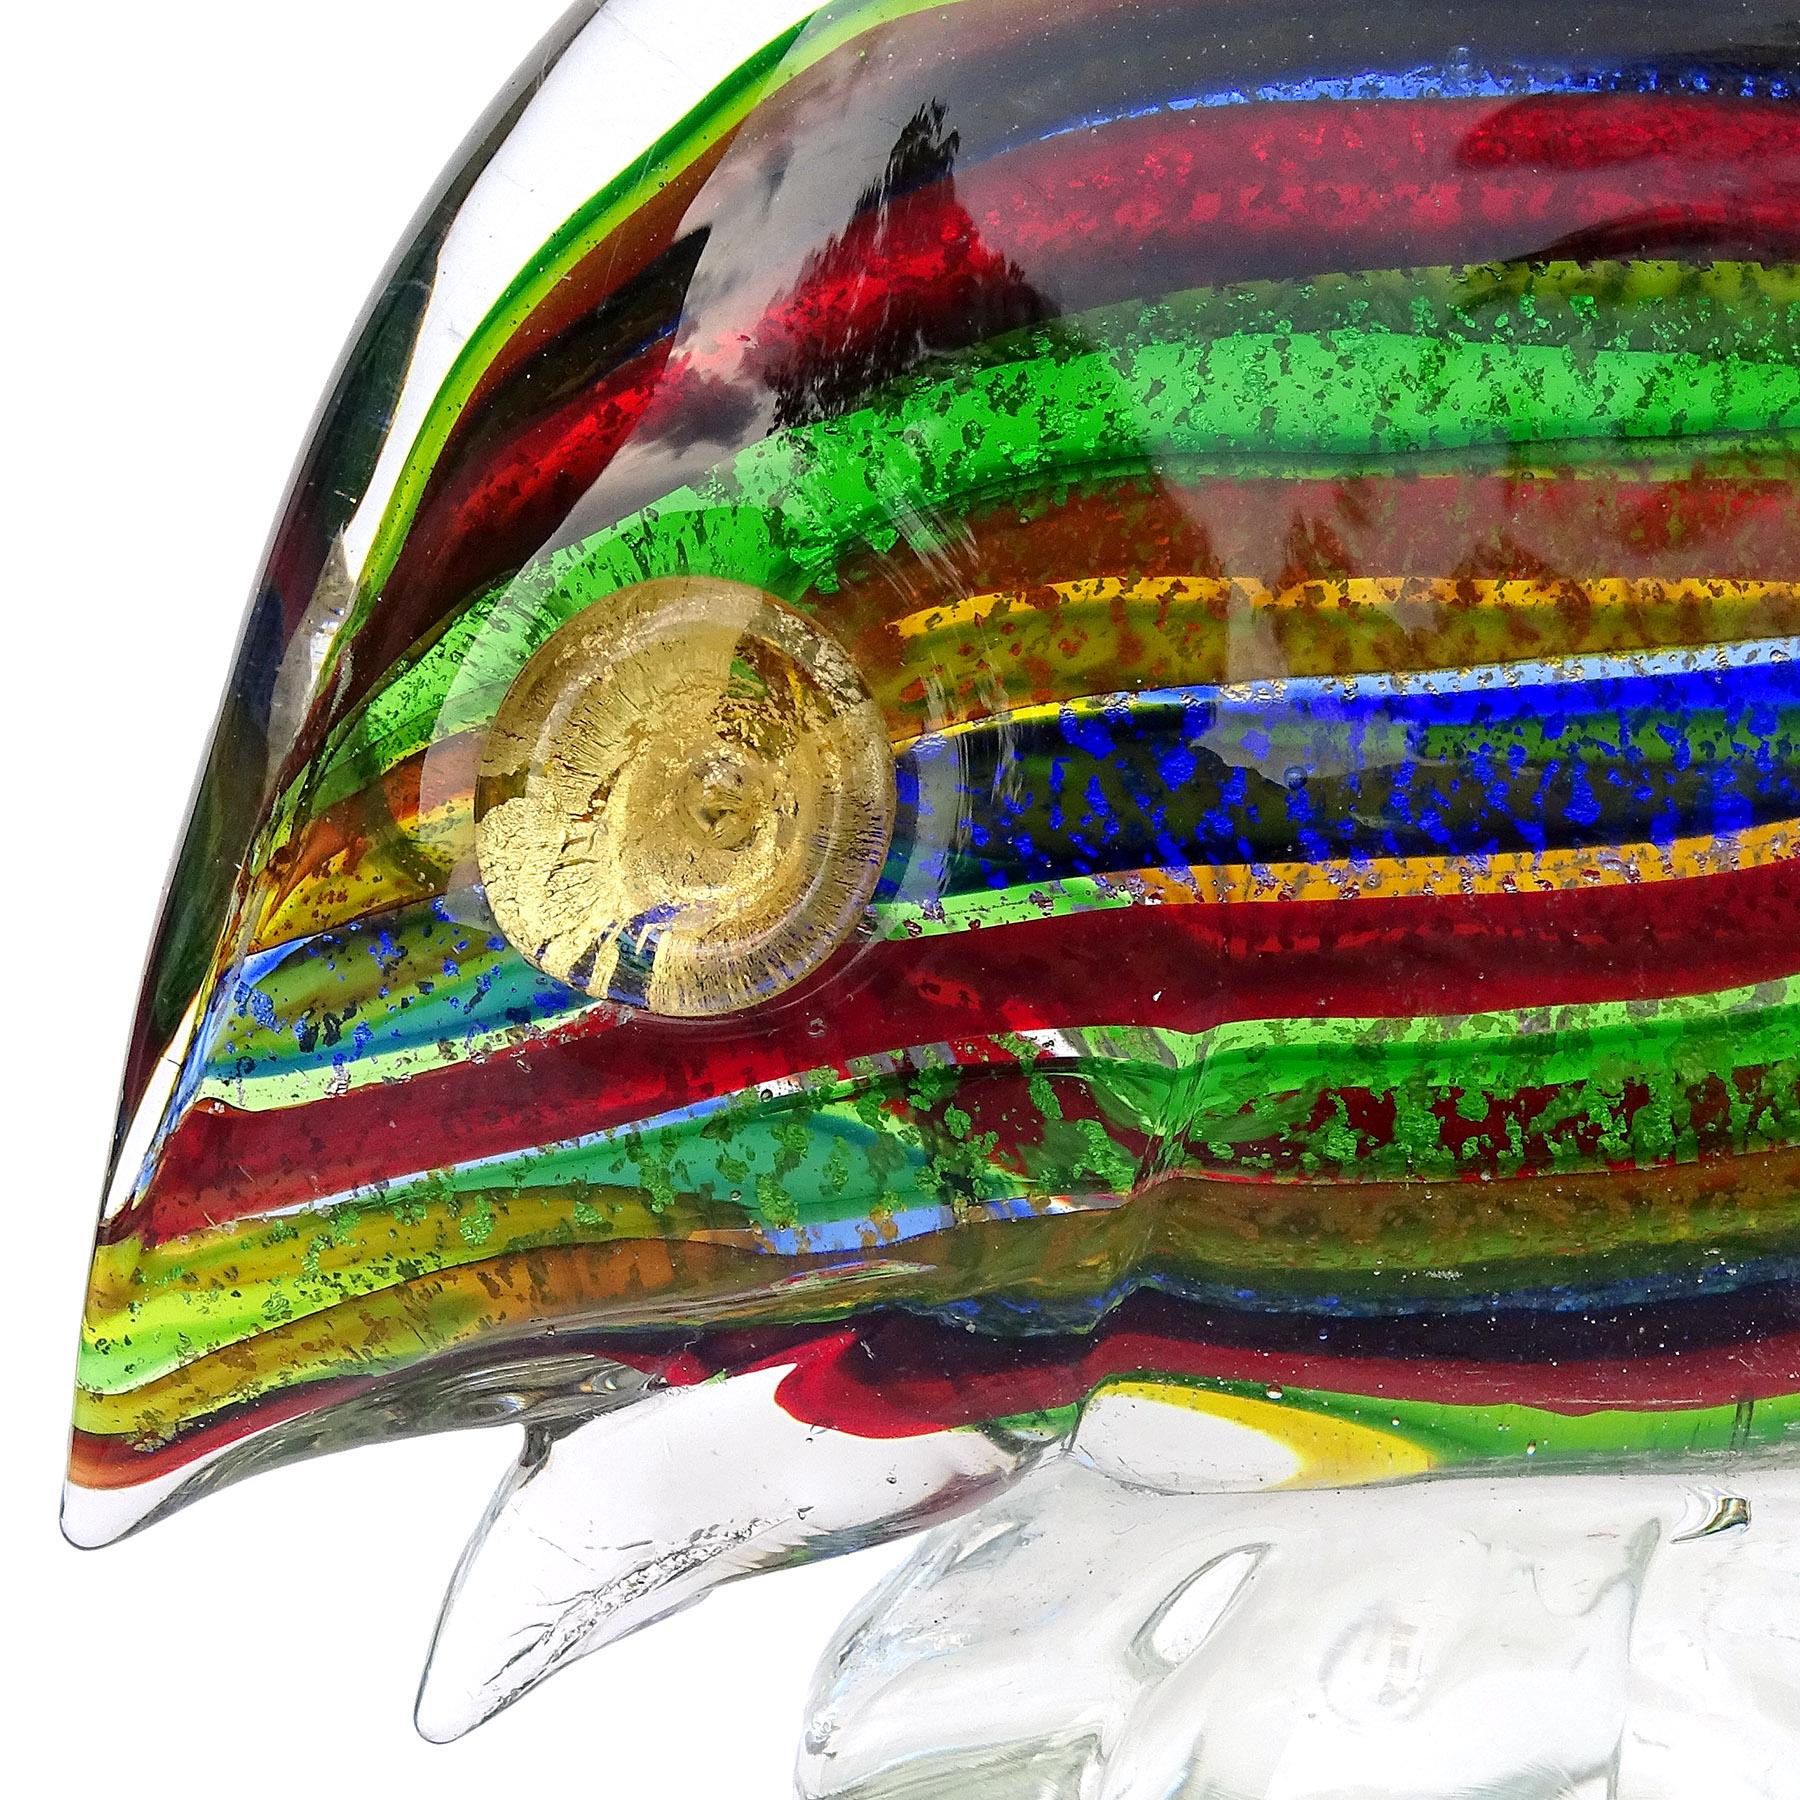 Schöne Vintage Murano mundgeblasenen Regenbogen Streifen, Silber und Gold Flecken italienische Kunst Glas Fischfigur. Wird dem Unternehmen A.VE.M. (Arte Vetraria Muranese) zugeschrieben. Der Fisch hat abwechselnd kobaltblaue, rote, grüne, gelbe und